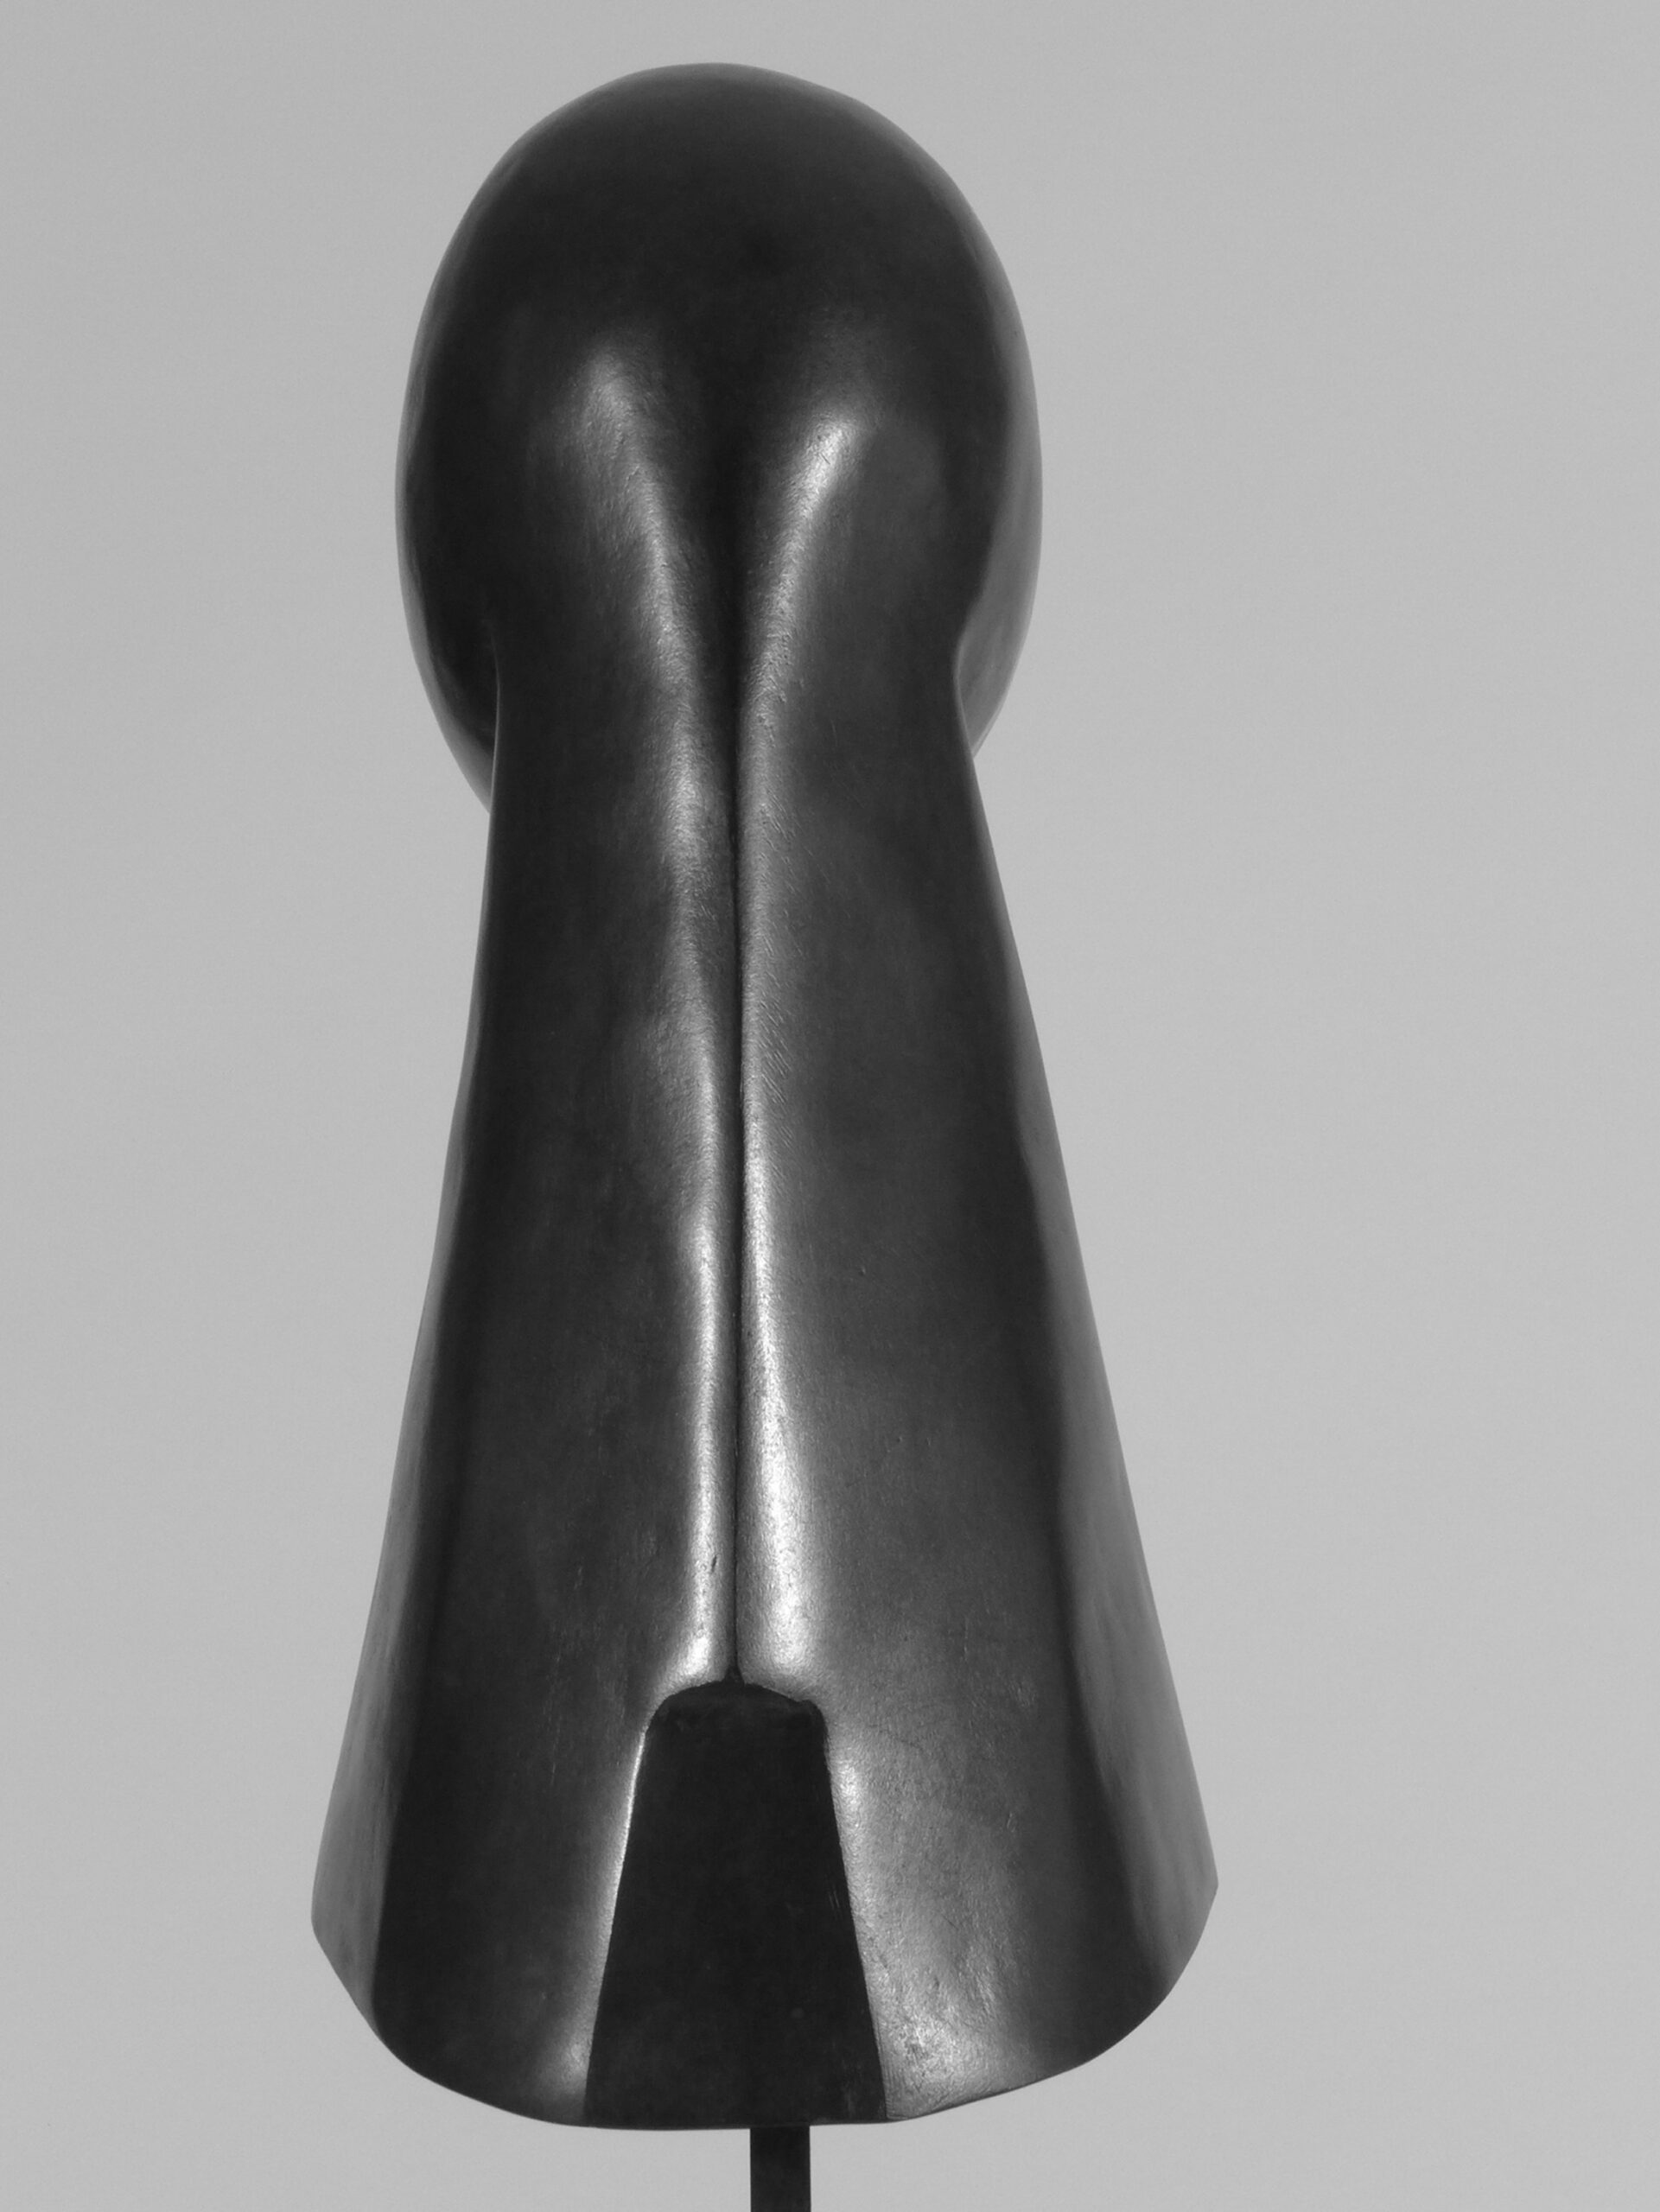 5 L’Avarice, 1986, bronze, h 62 cm